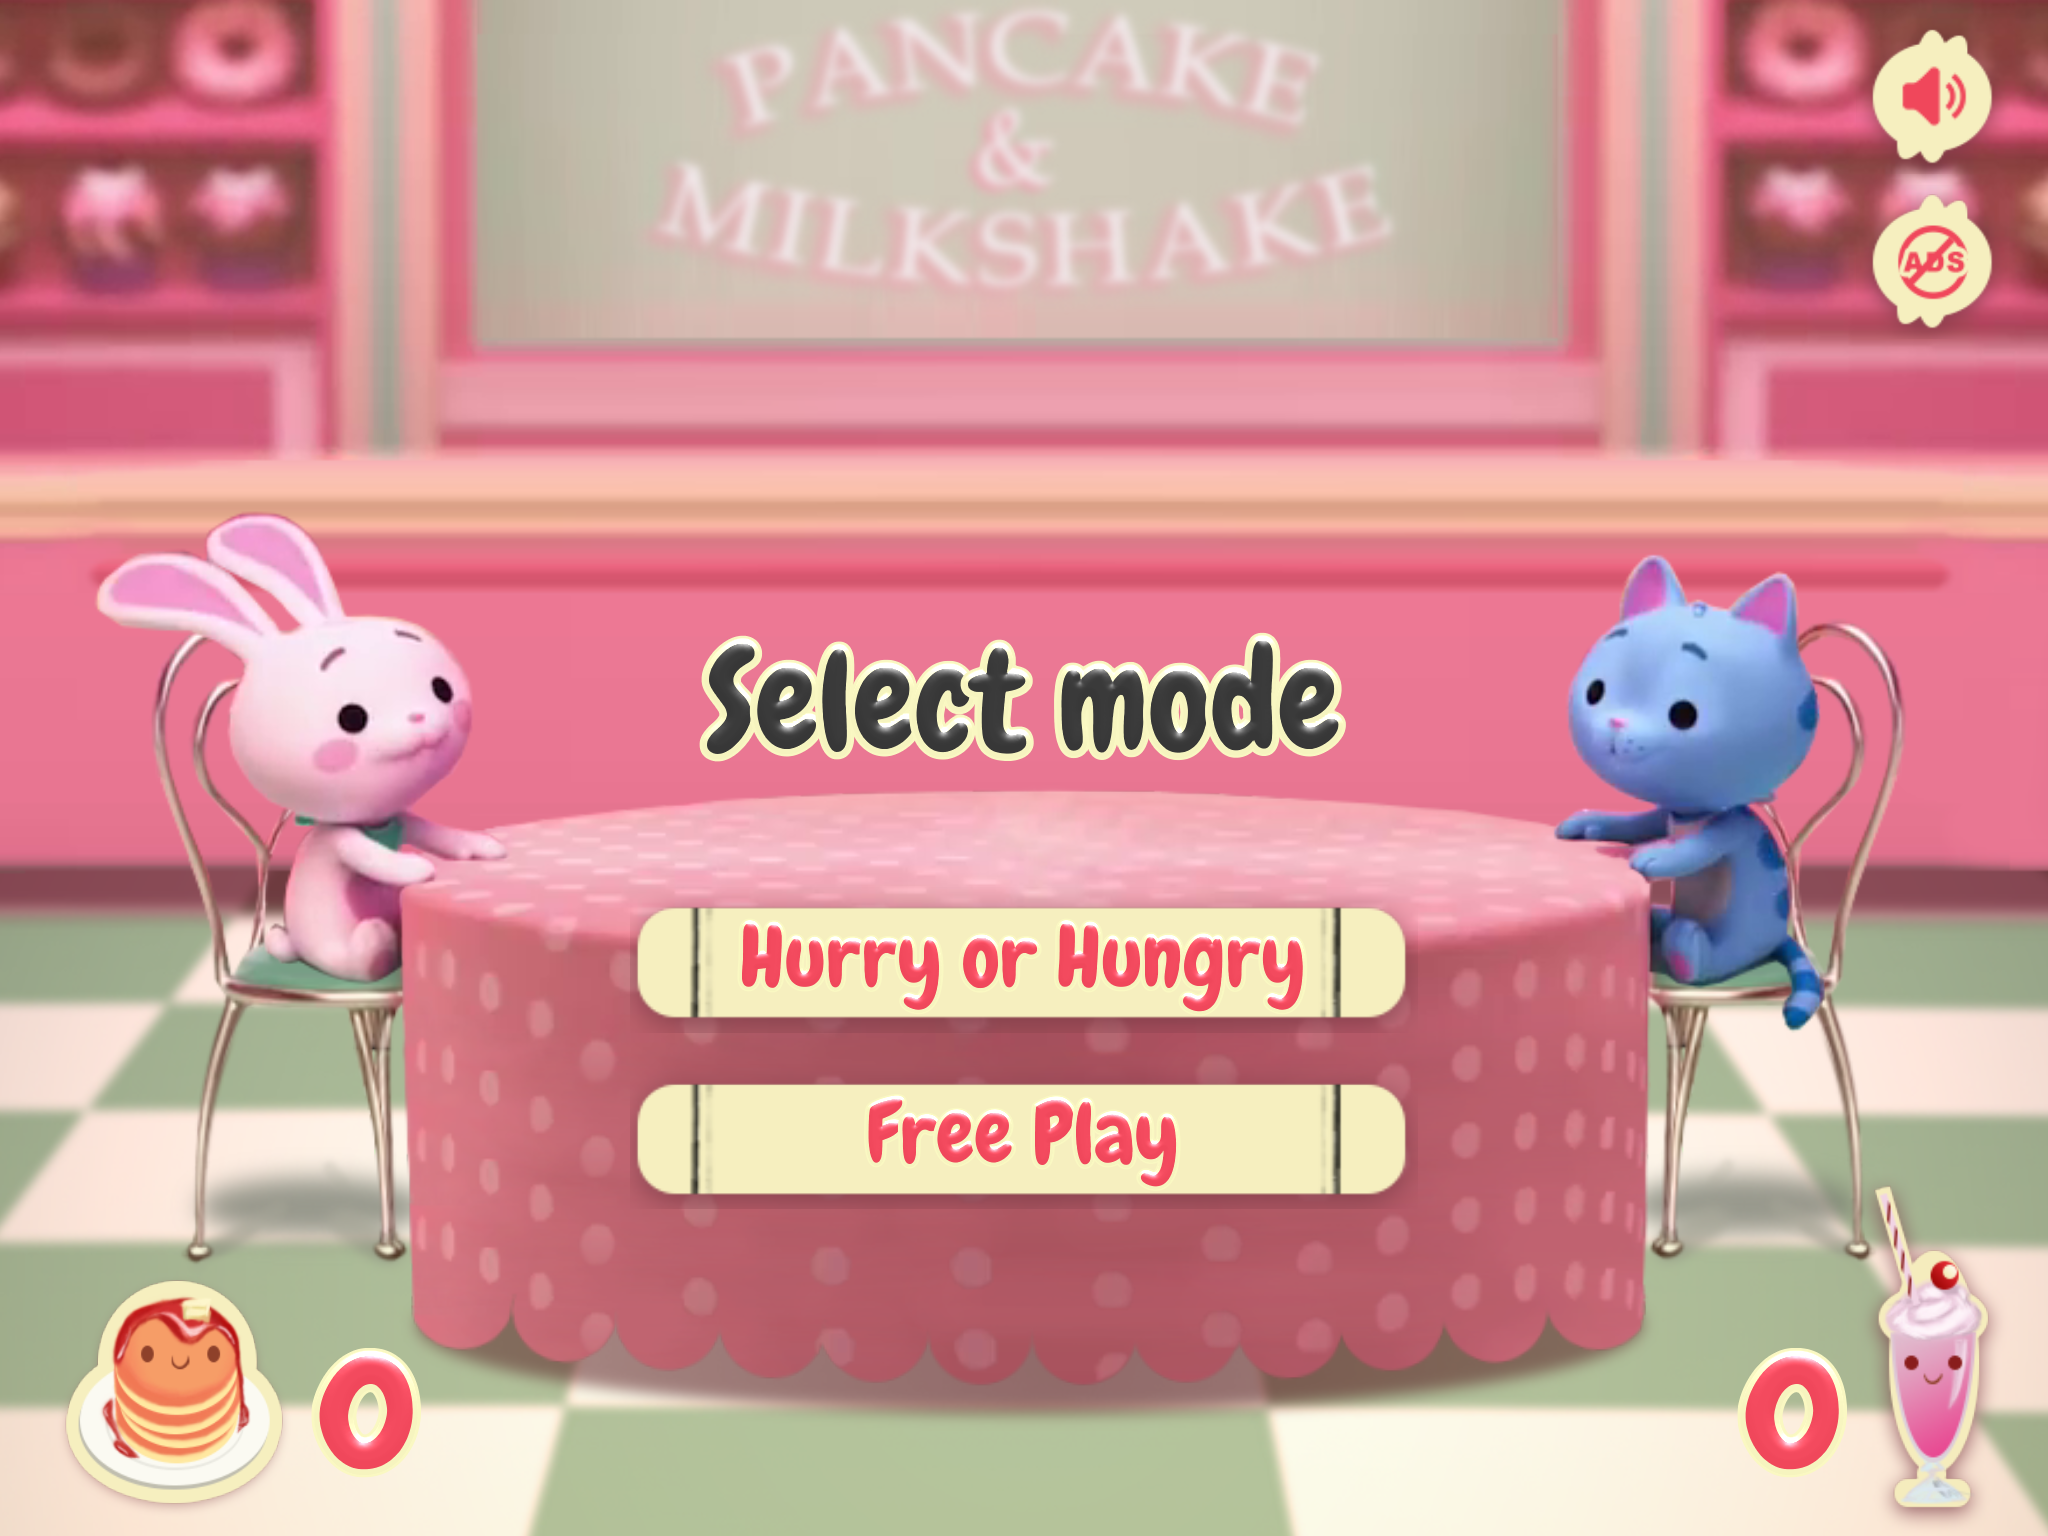 Screenshot 1 of Pancake at Milkshake! 0.1